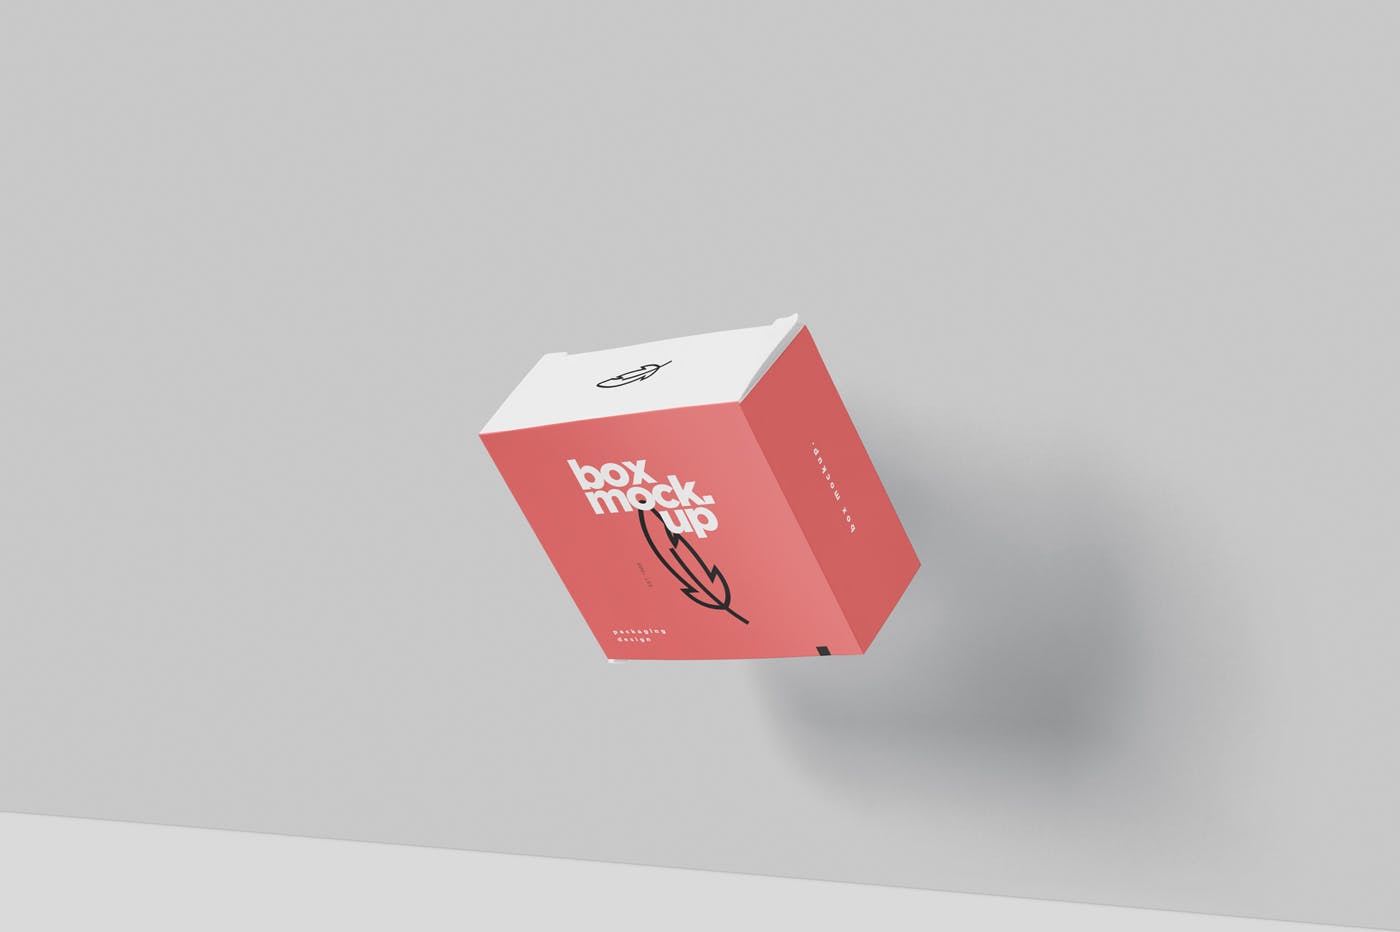 扁平方形包装盒外观设计效果图素材库精选 Box Mockup – Square Slim Size插图(3)